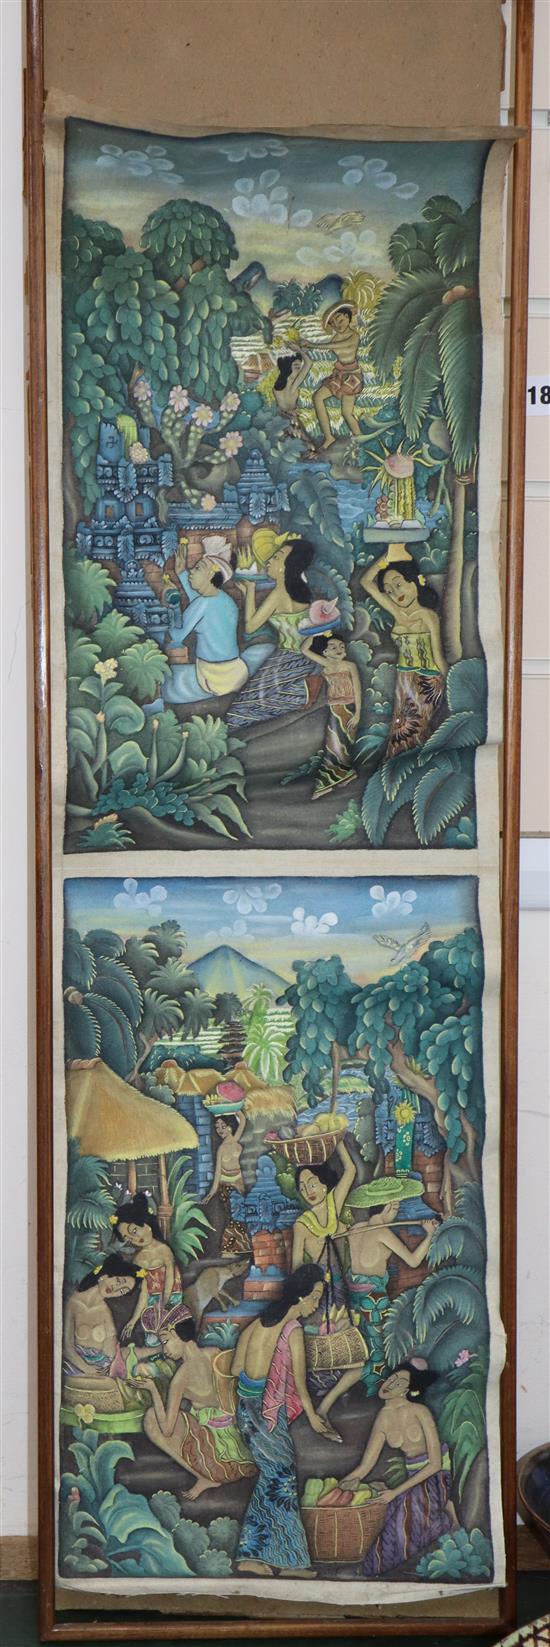 A Javanese batik painting